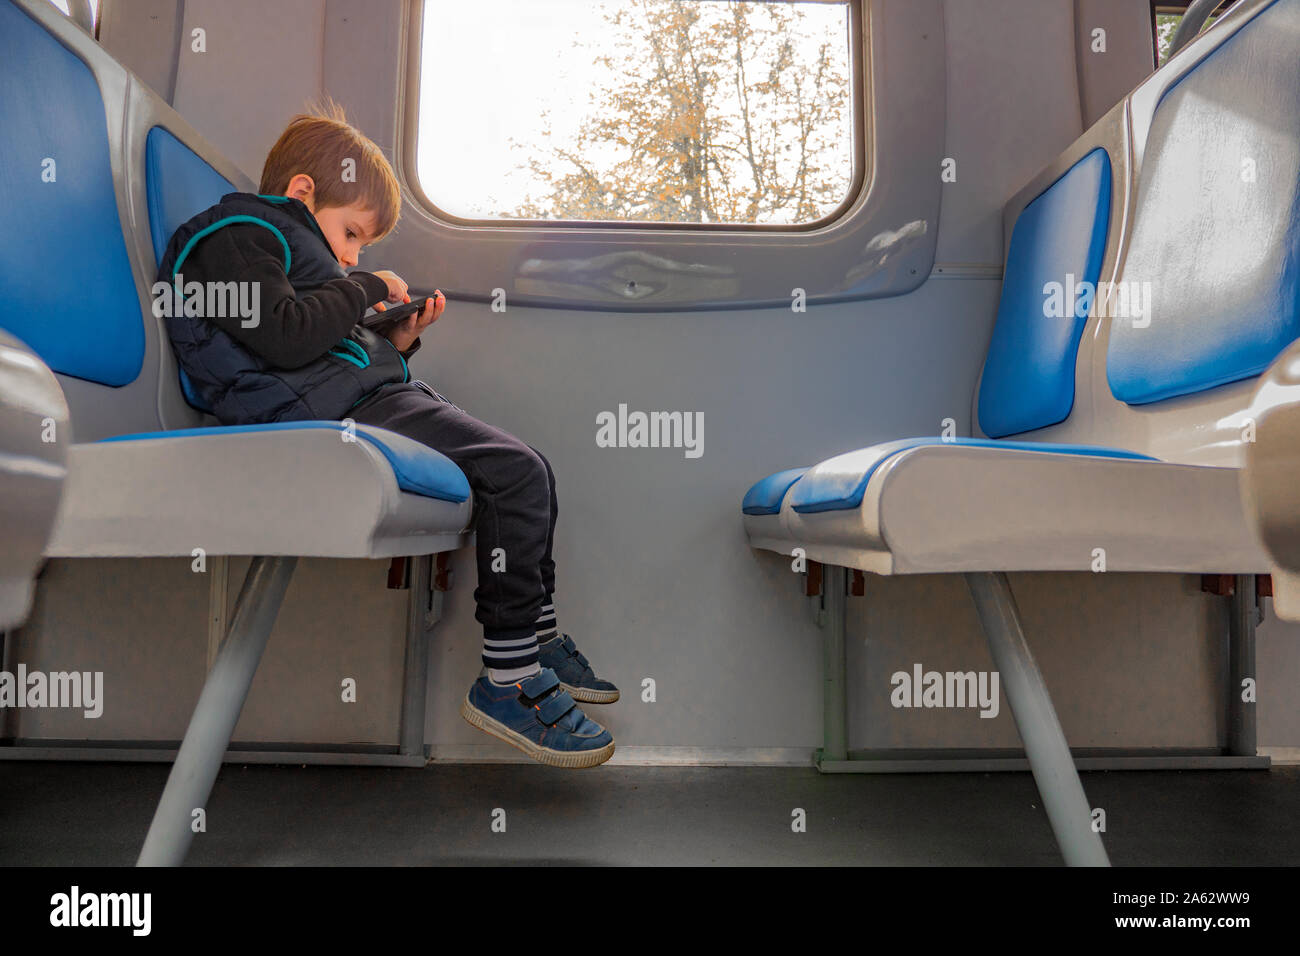 Junge mit Handy im Zug sitzen. Kinder und Technologien. Junge Junge, die Spiel am Telefon während der Sitzung in Zug. Qualität der Internetverbindung. Junge Reisende Reisen mit elektronischen Karte Stockfoto